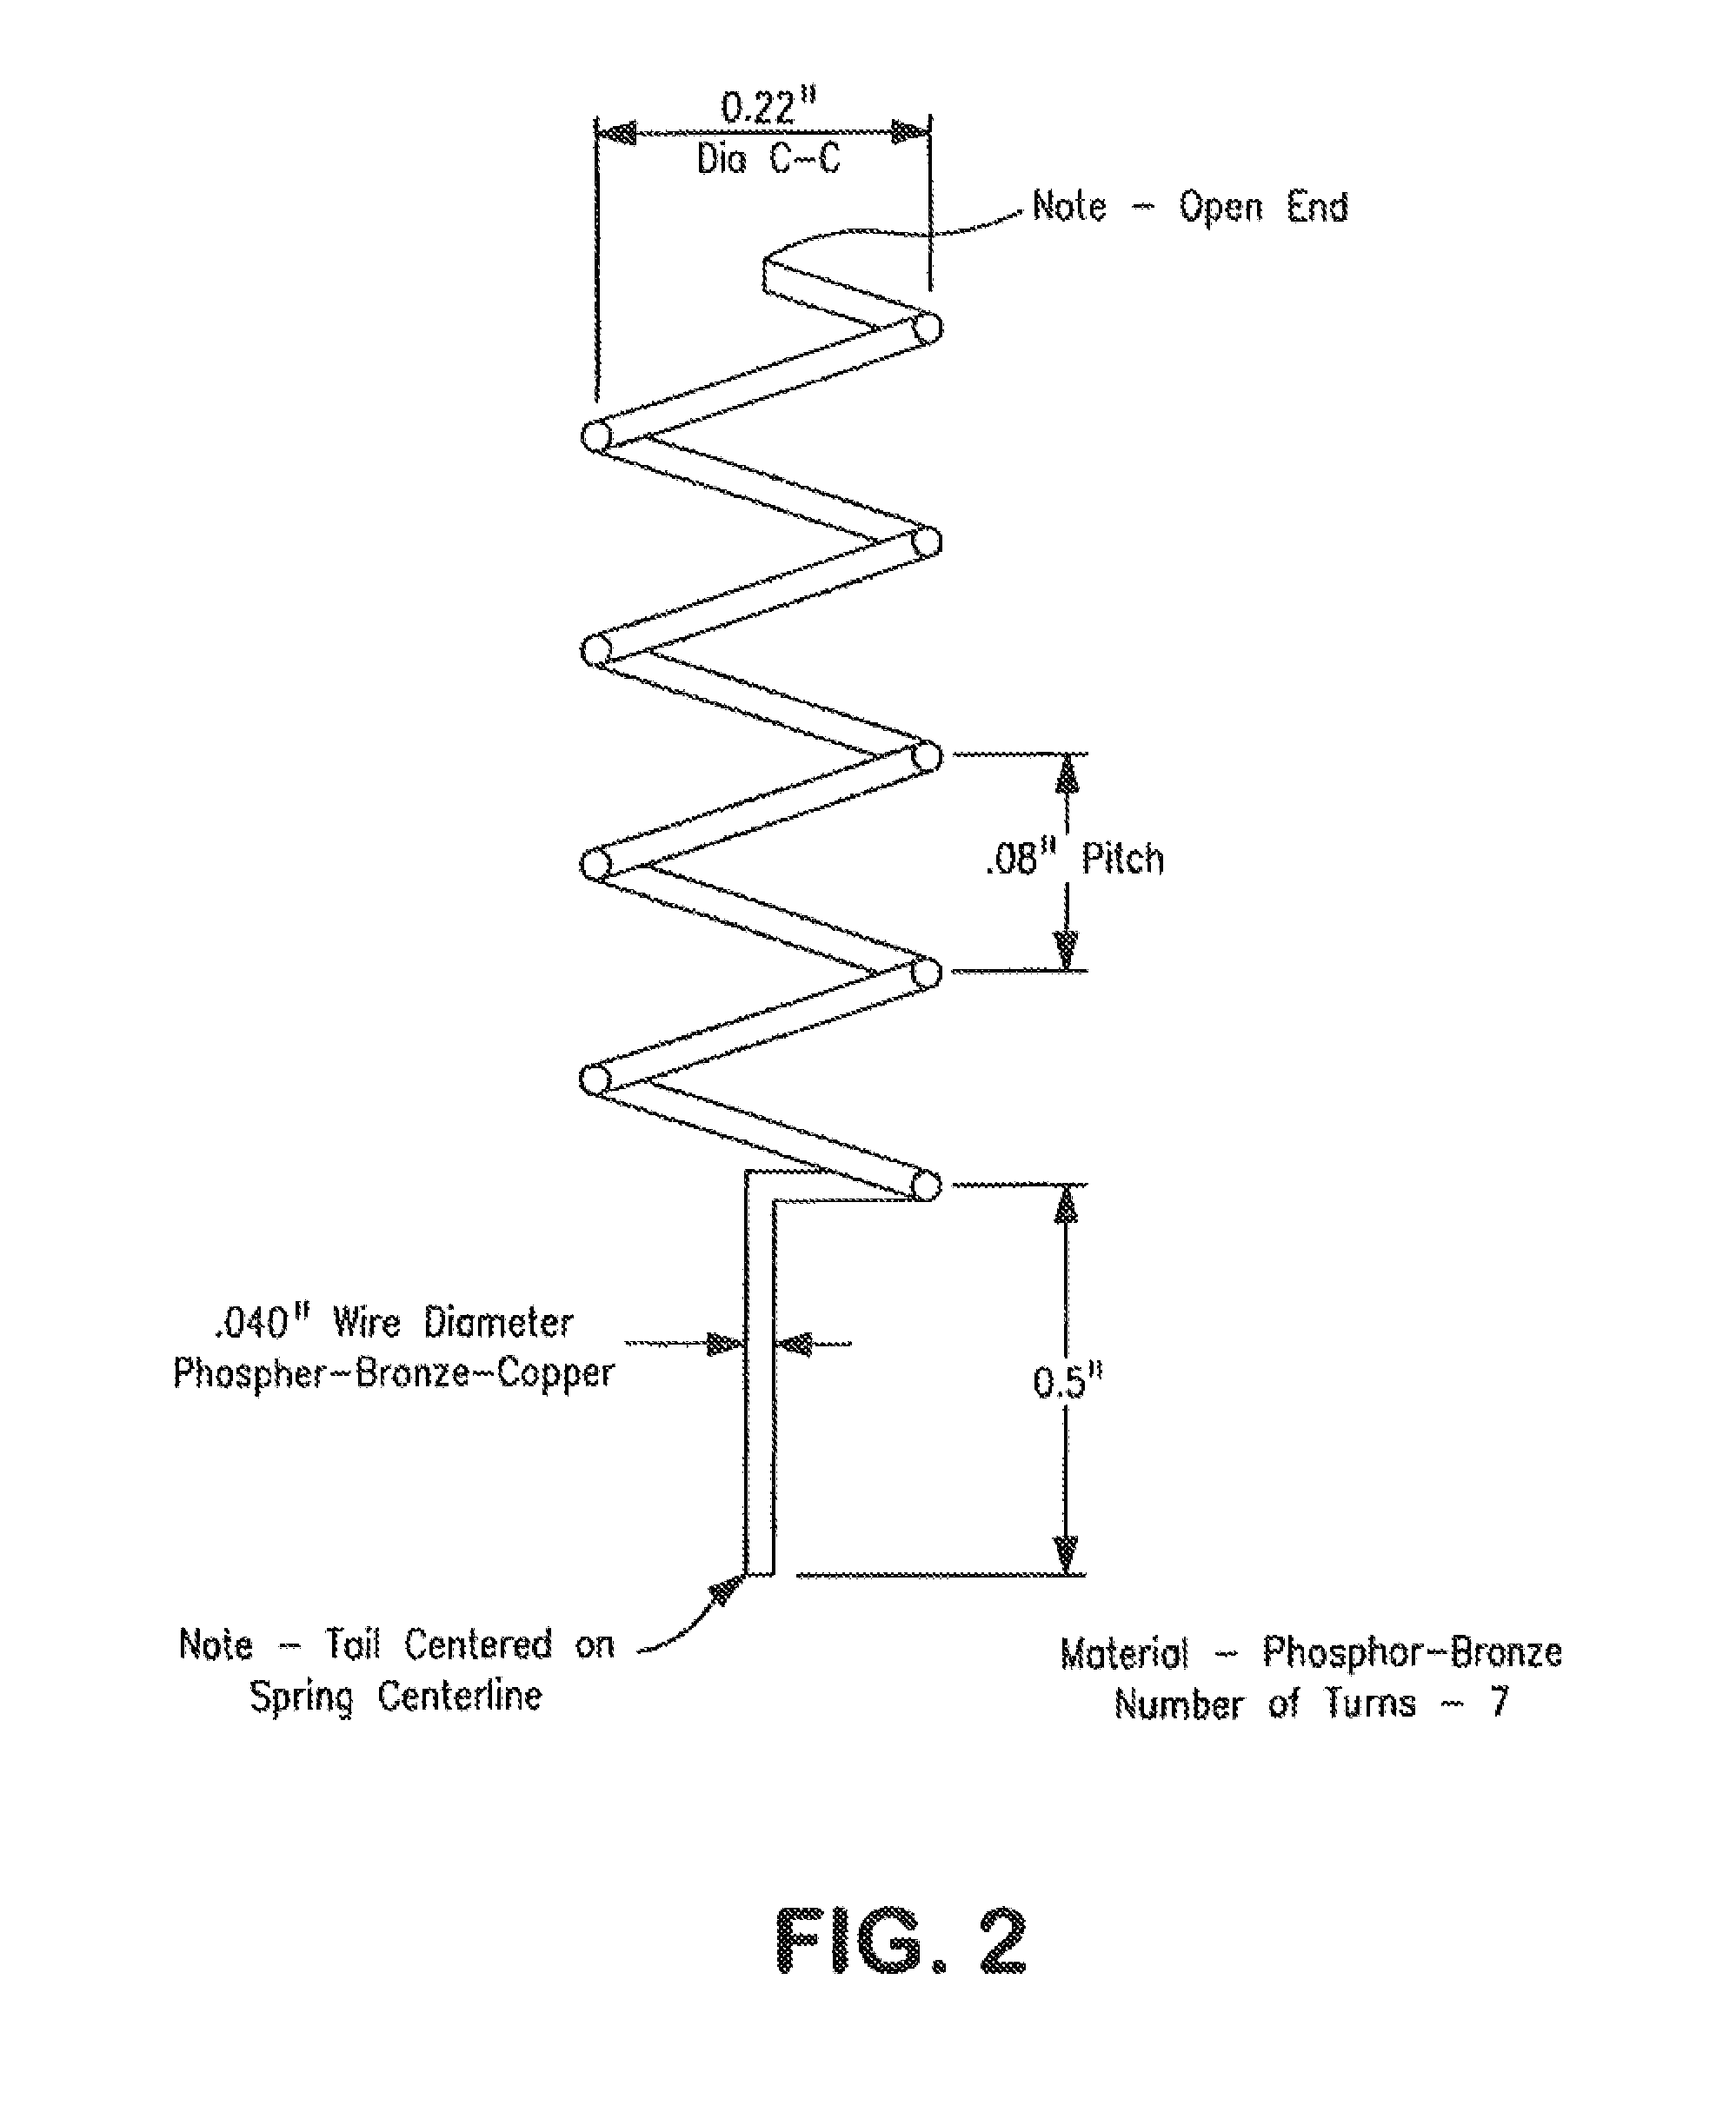 Gen II meter system